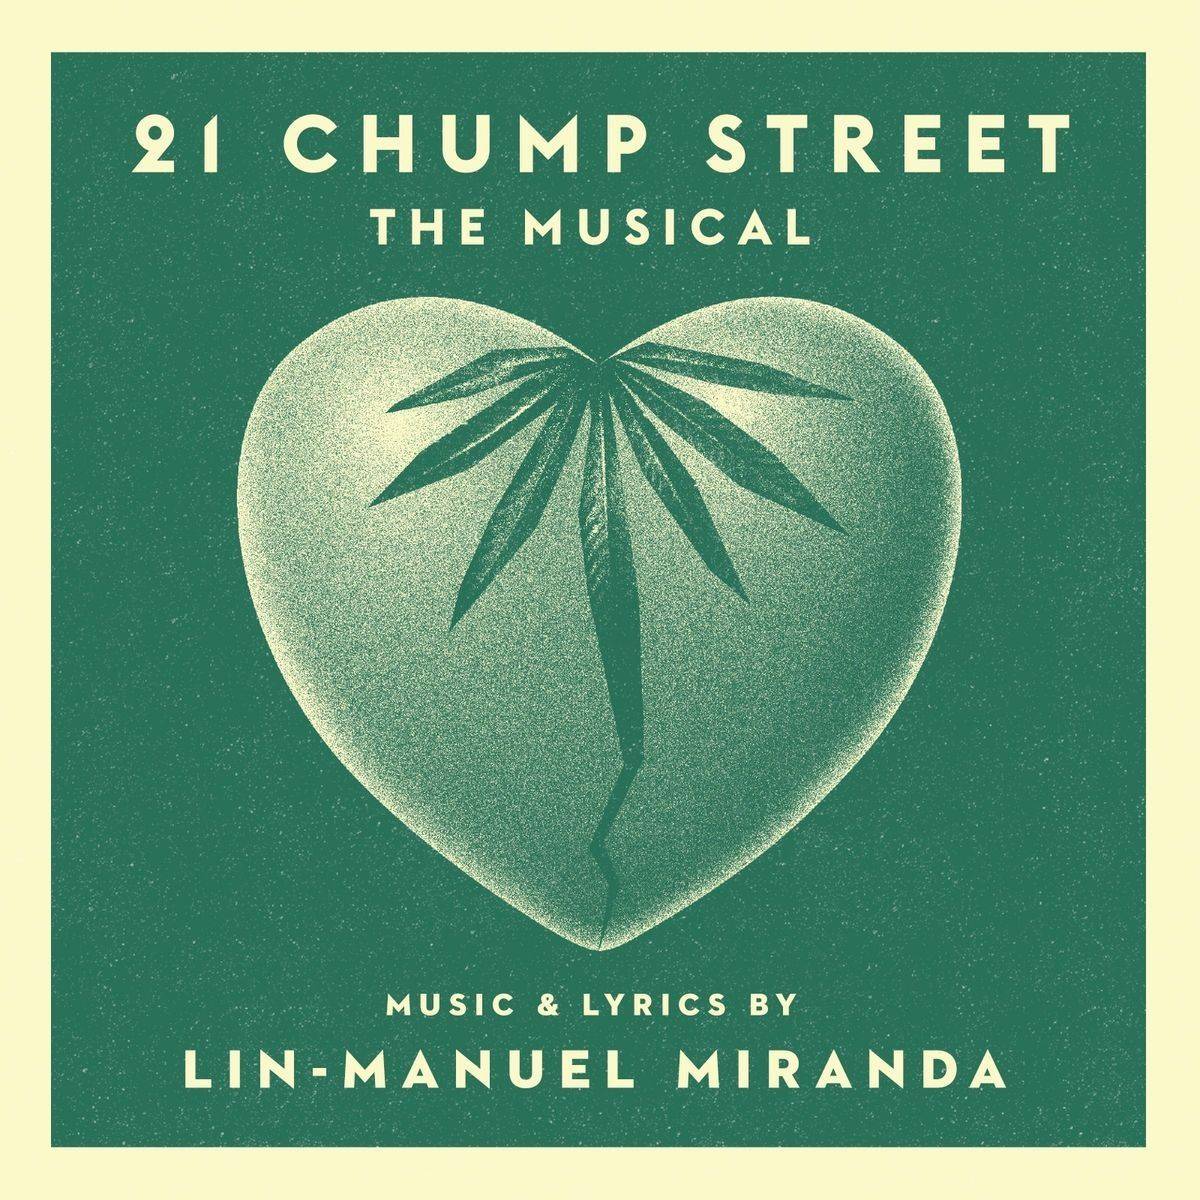 21 Chump Street: The Musical